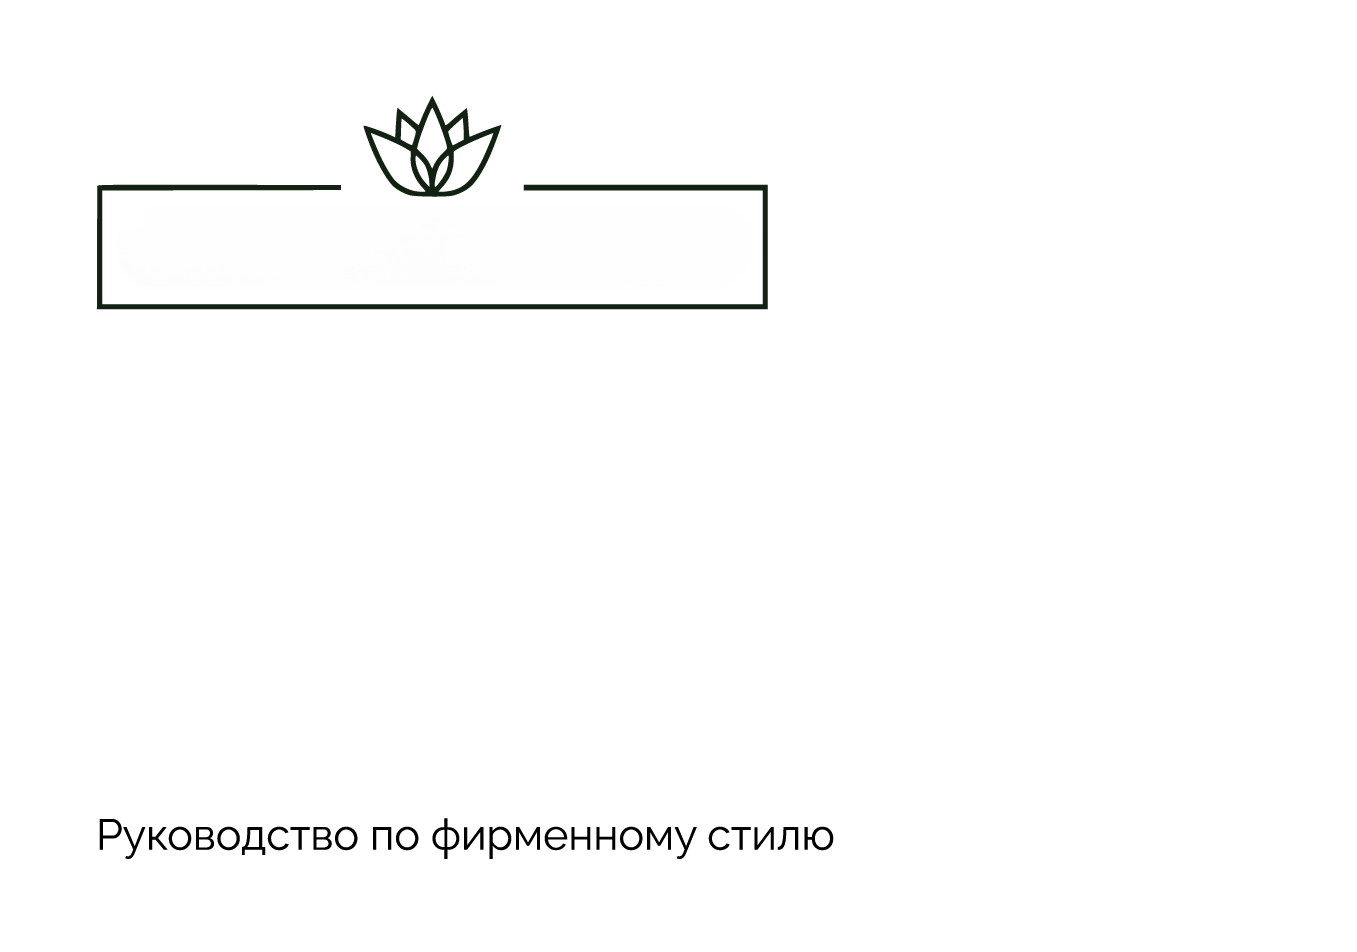 24 субъектам малого и среднего бизнеса Башкортостана за счет государства была оказана услуга «Разработка фирменного стиля»-slide